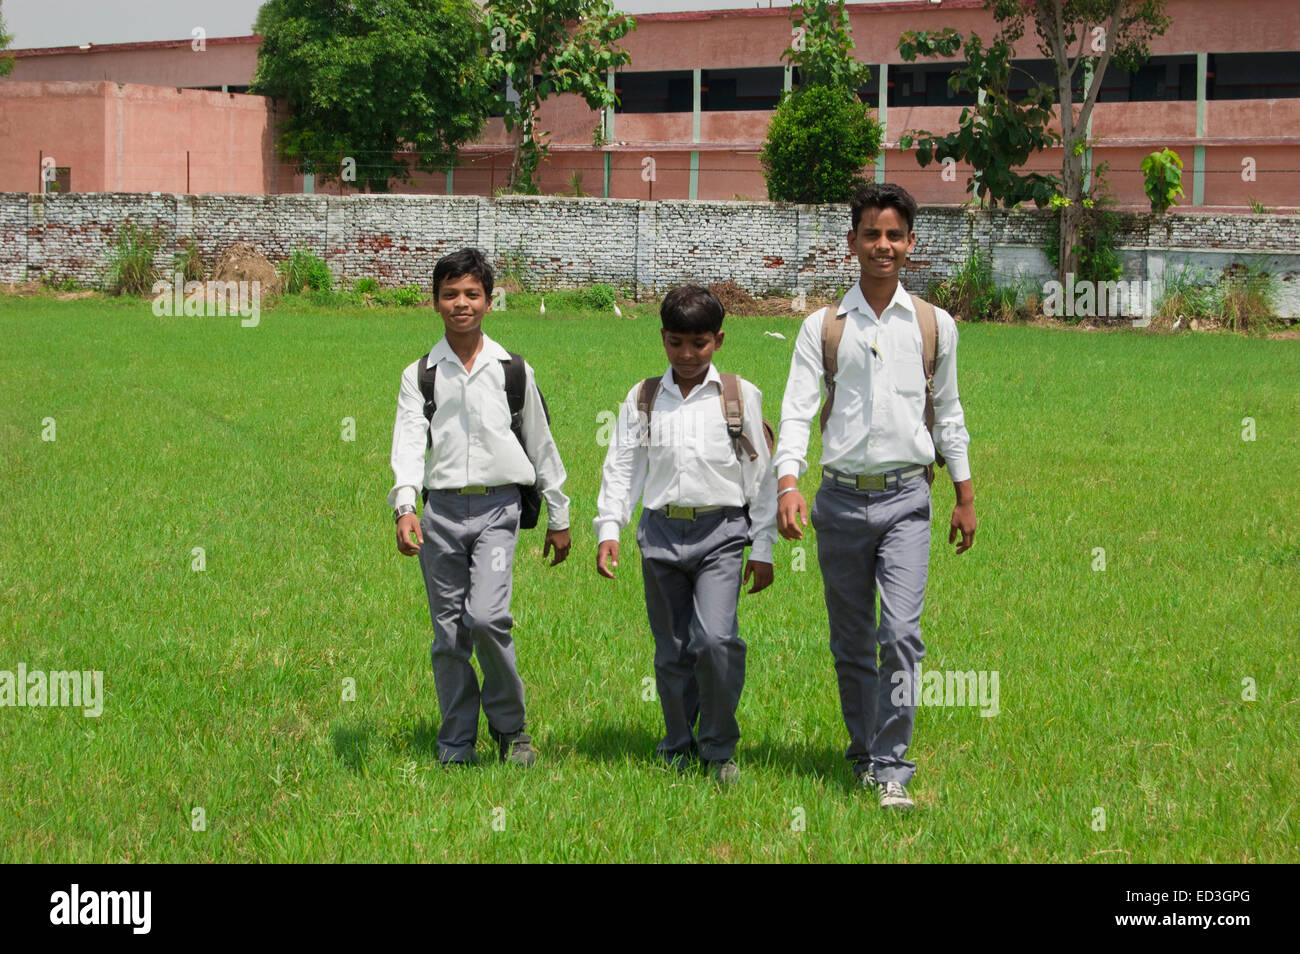 3 indian rural children School Students walking park Stock Photo